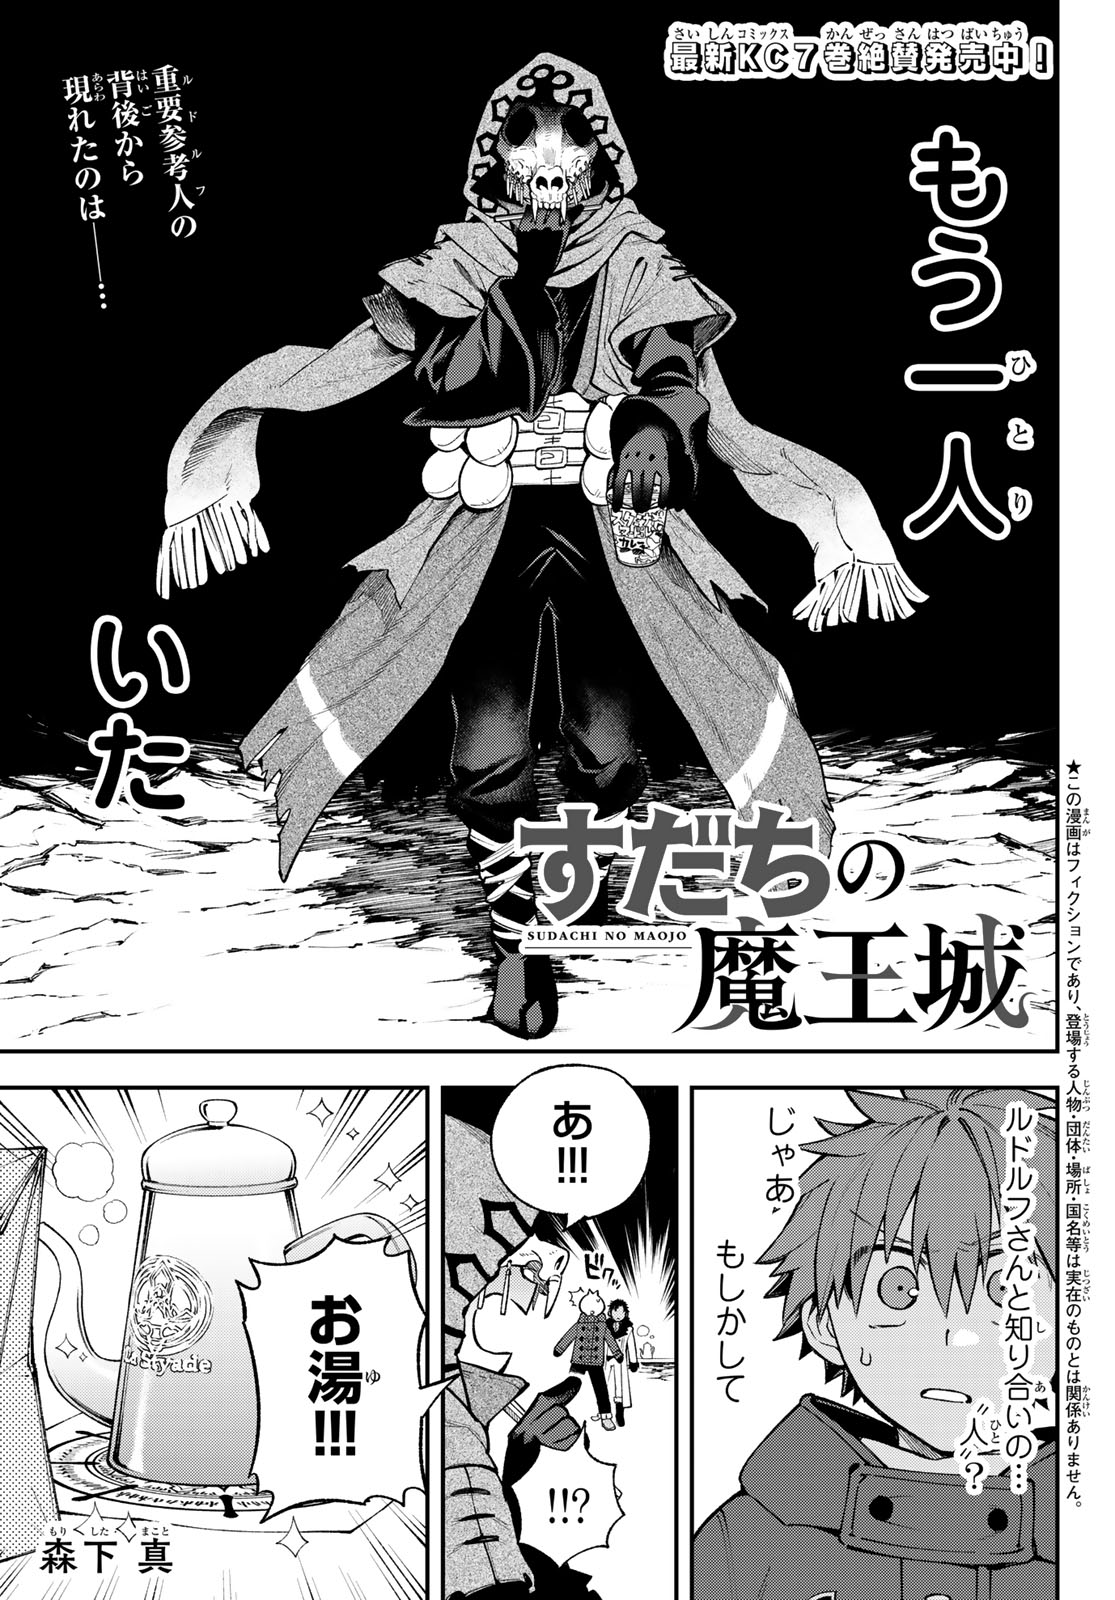 Sudachi no Maoujou - Chapter 31 - Page 1